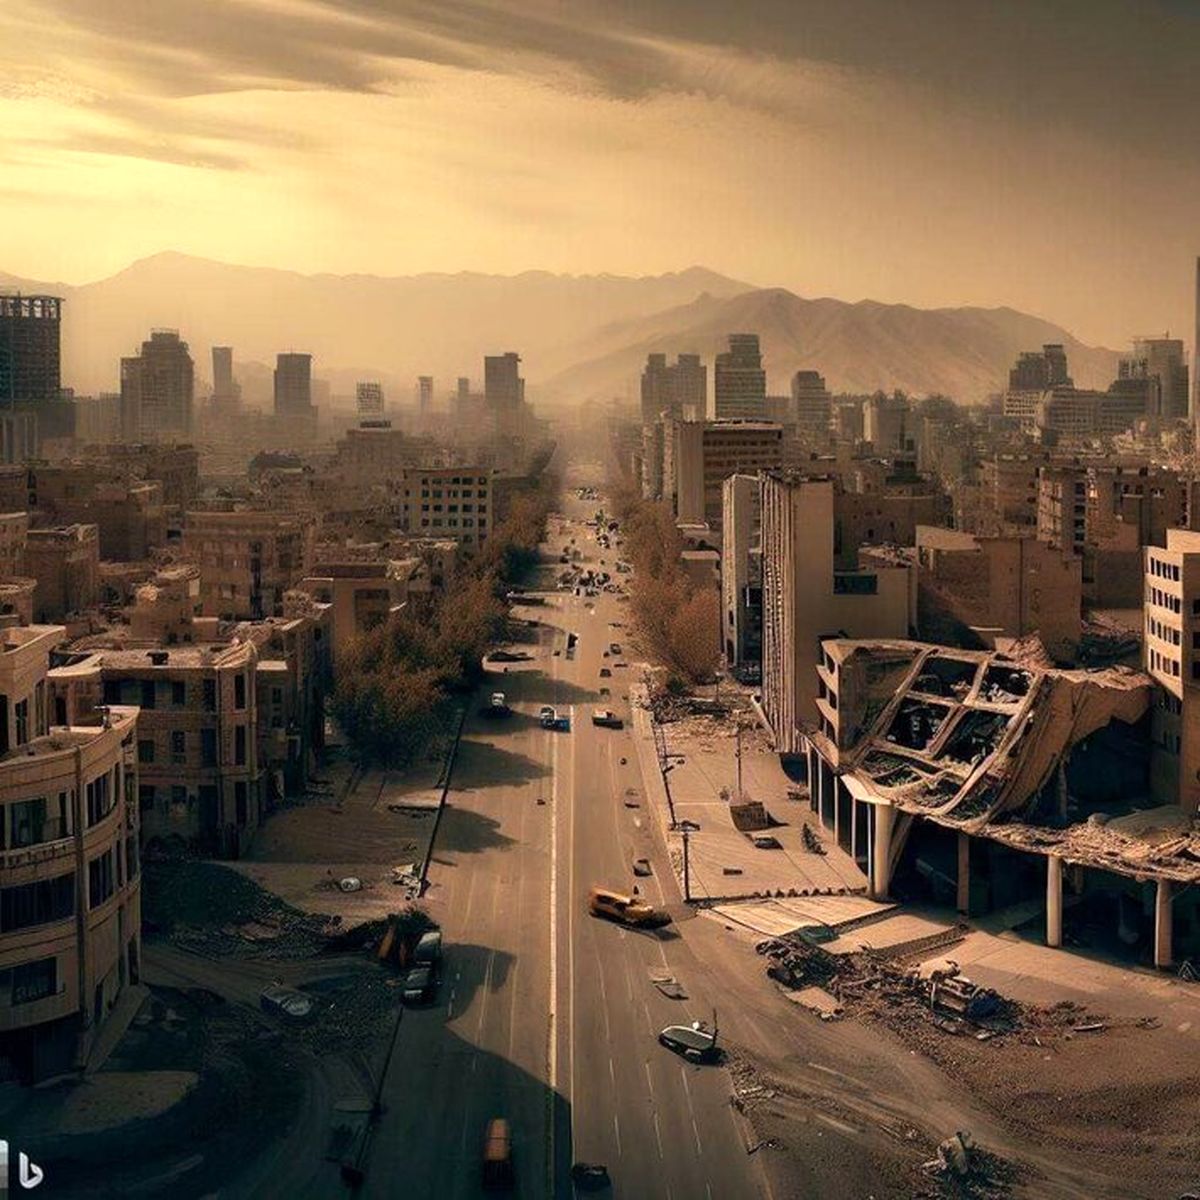 حادثه وحشتناکی در تهران رخ می دهد / عکس های ترسناک هوش مصنوعی از تهرانِ آینده